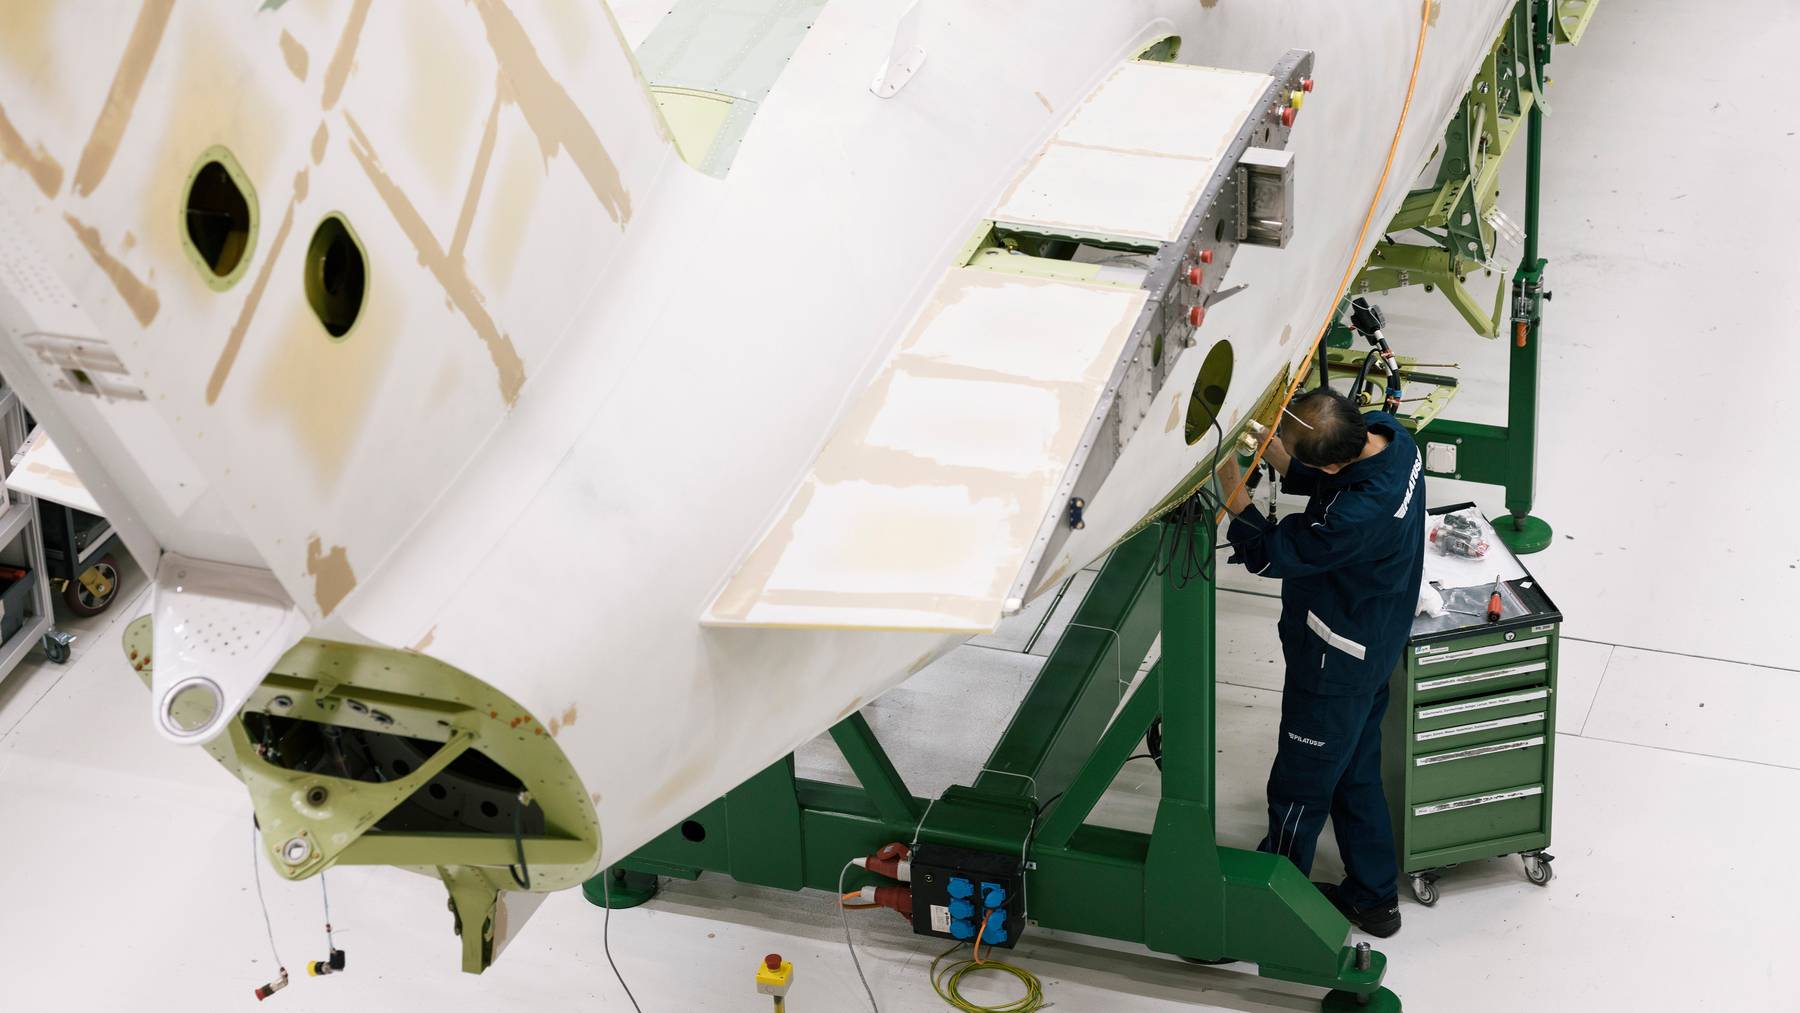 Ob die Pilatus Flugzeugwerke in Zukunft ihre exportierten Güter im Ausland warten dürfen, ist unklar.